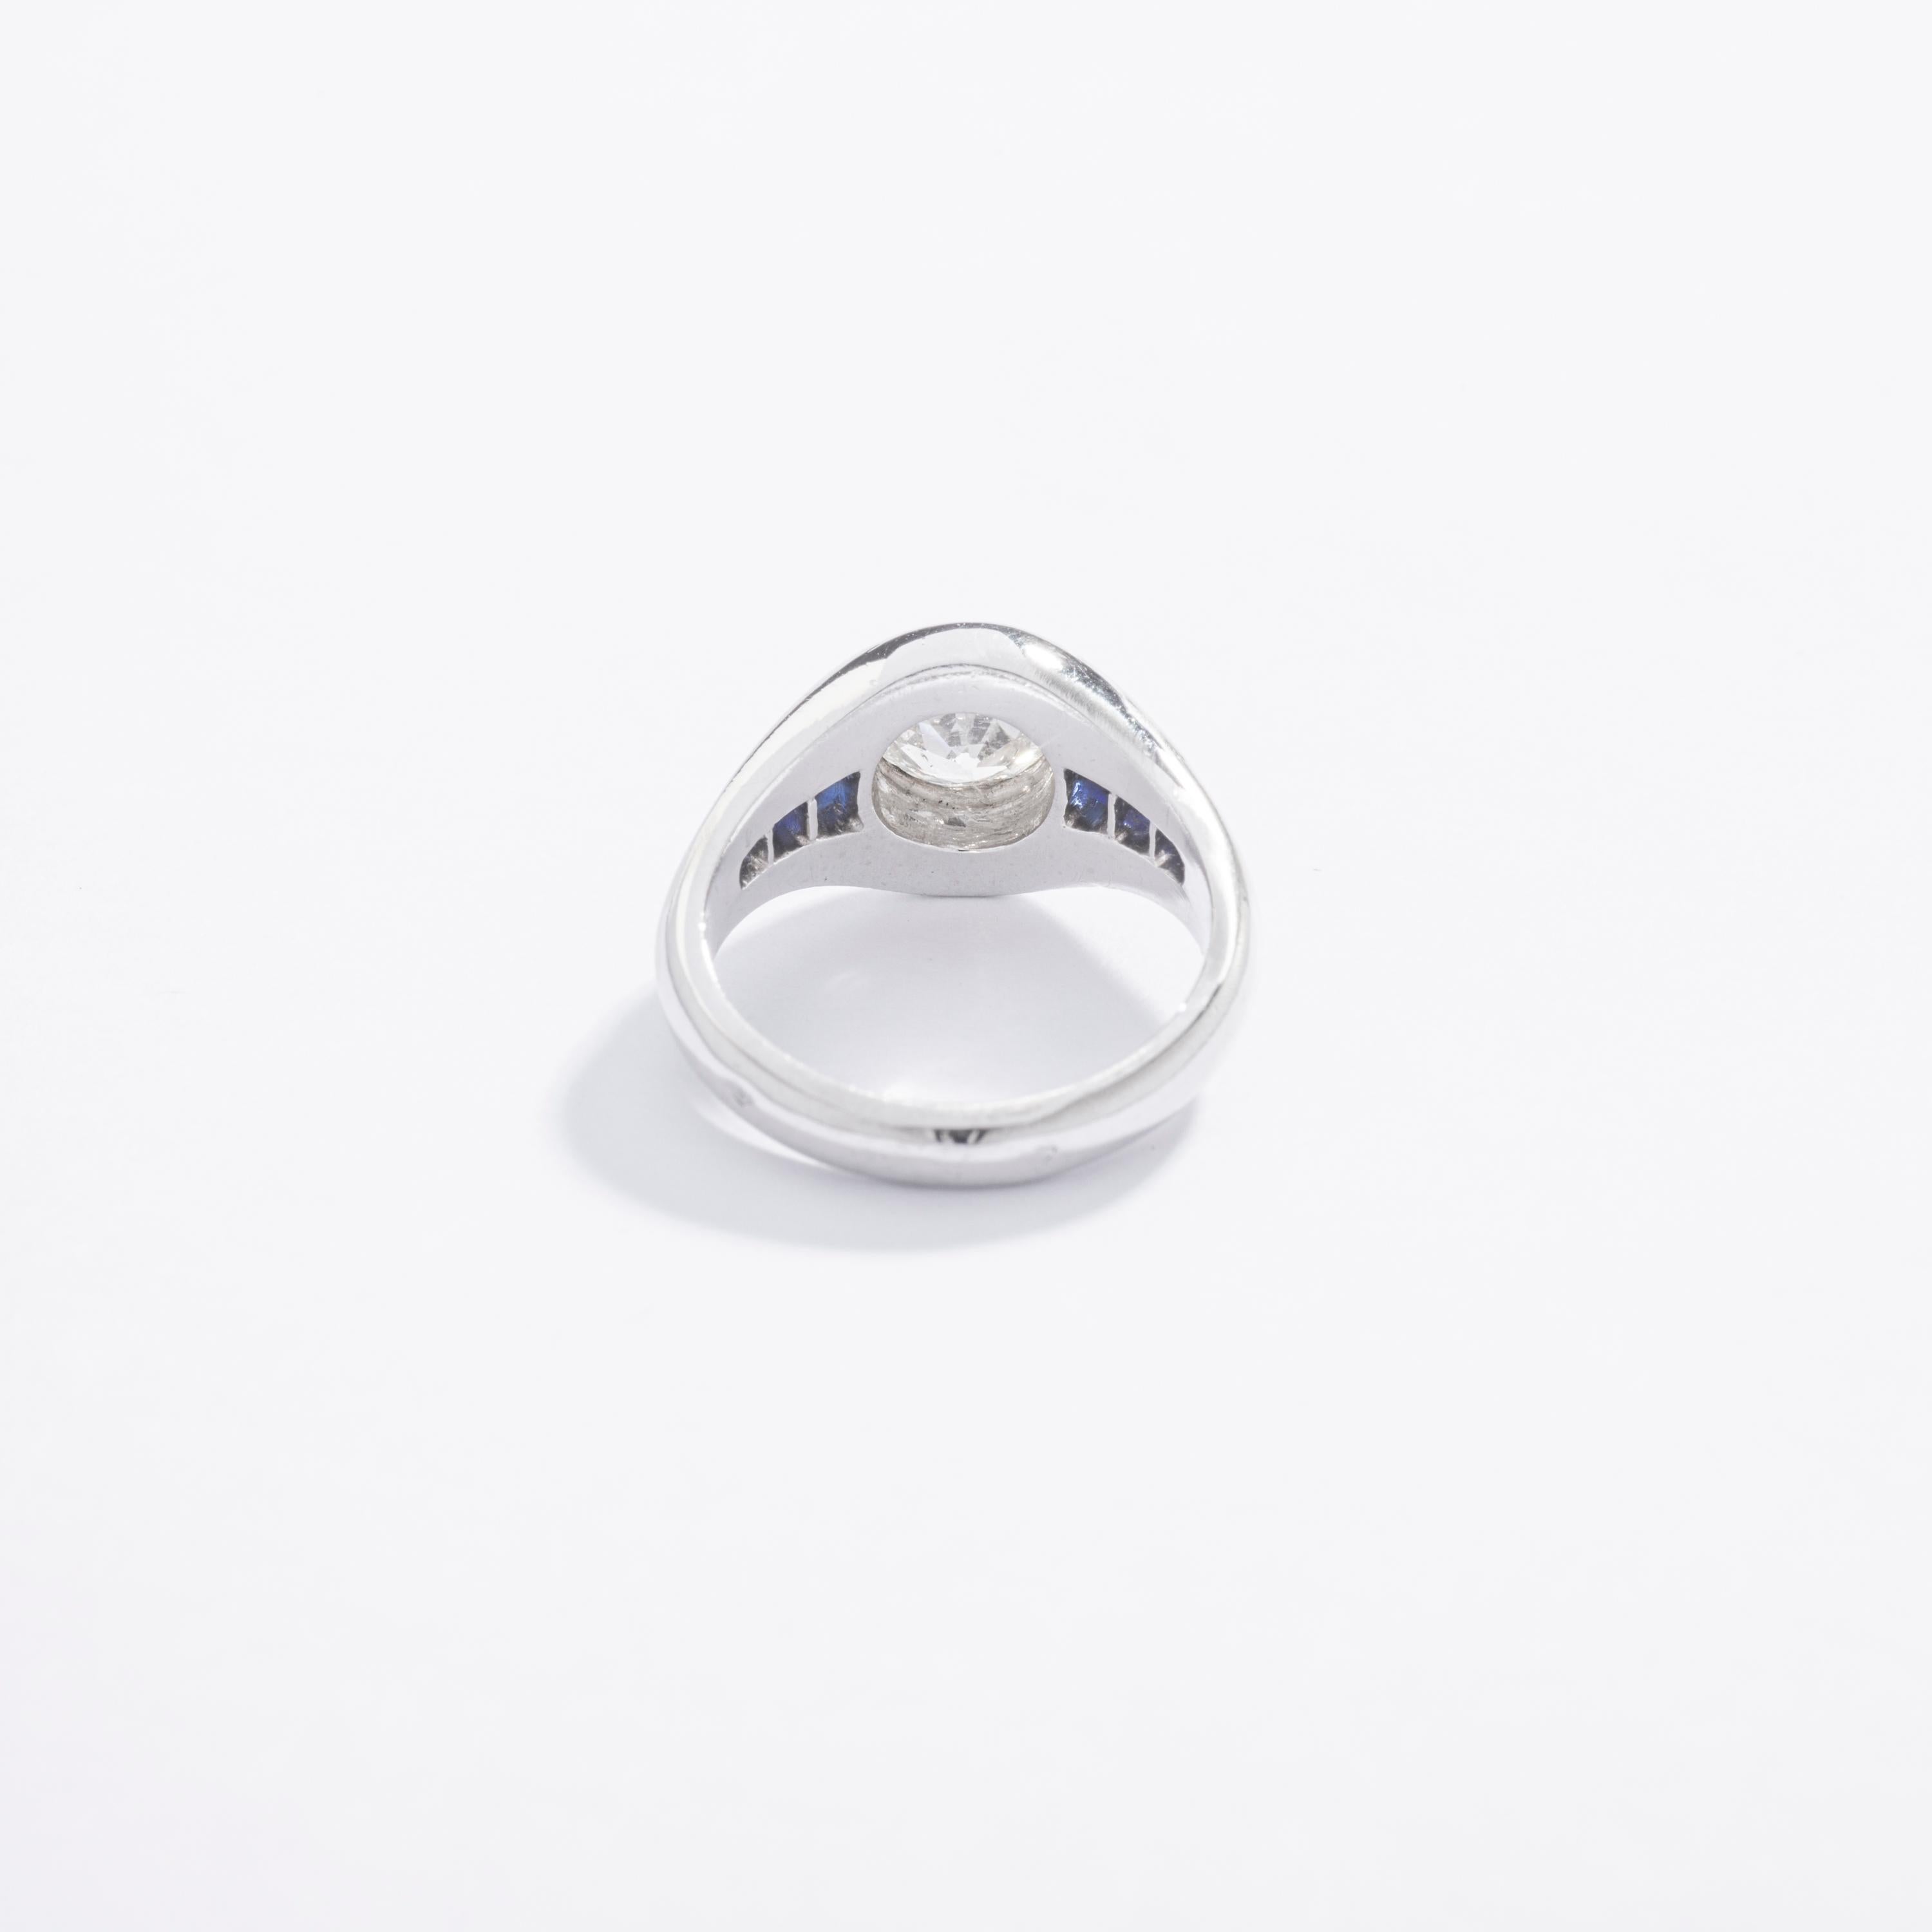 Dieser kleine Chevalière-Ring ist erstaunlich. Antike, 100 Jahre alt, aber ein so modernes Design!
In der Mitte ein Diamant mit altem Minenschliff von 0,46 Karat auf Platin mit kalibriertem Saphir. Das Stück ist in perfektem Zustand.

Ringgröße: 2